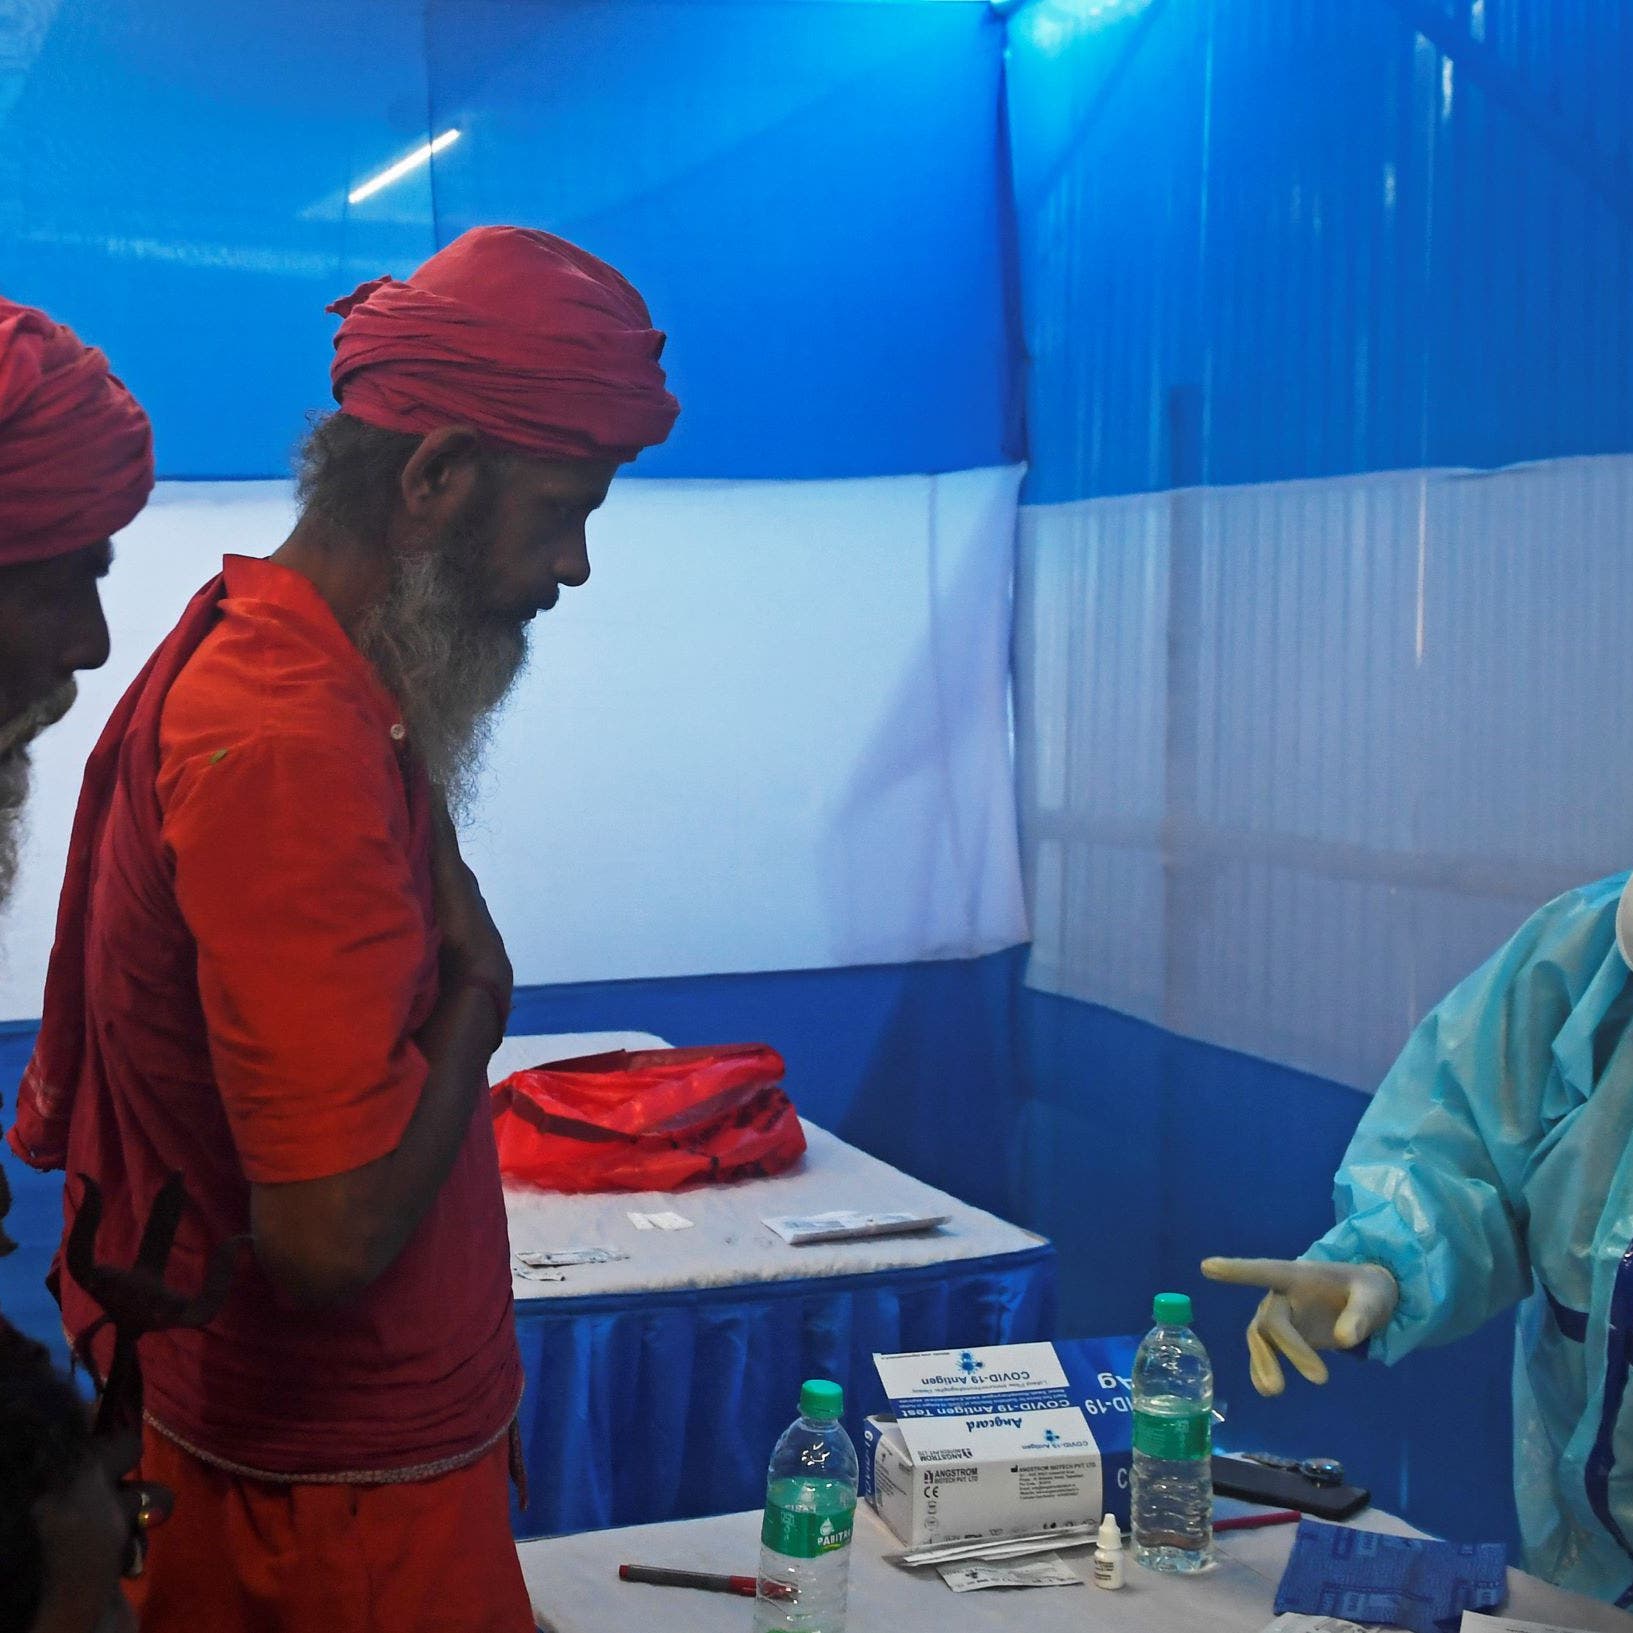 اكتشاف إصابات بسلالة جديدة لفيروس كورونا في الهند